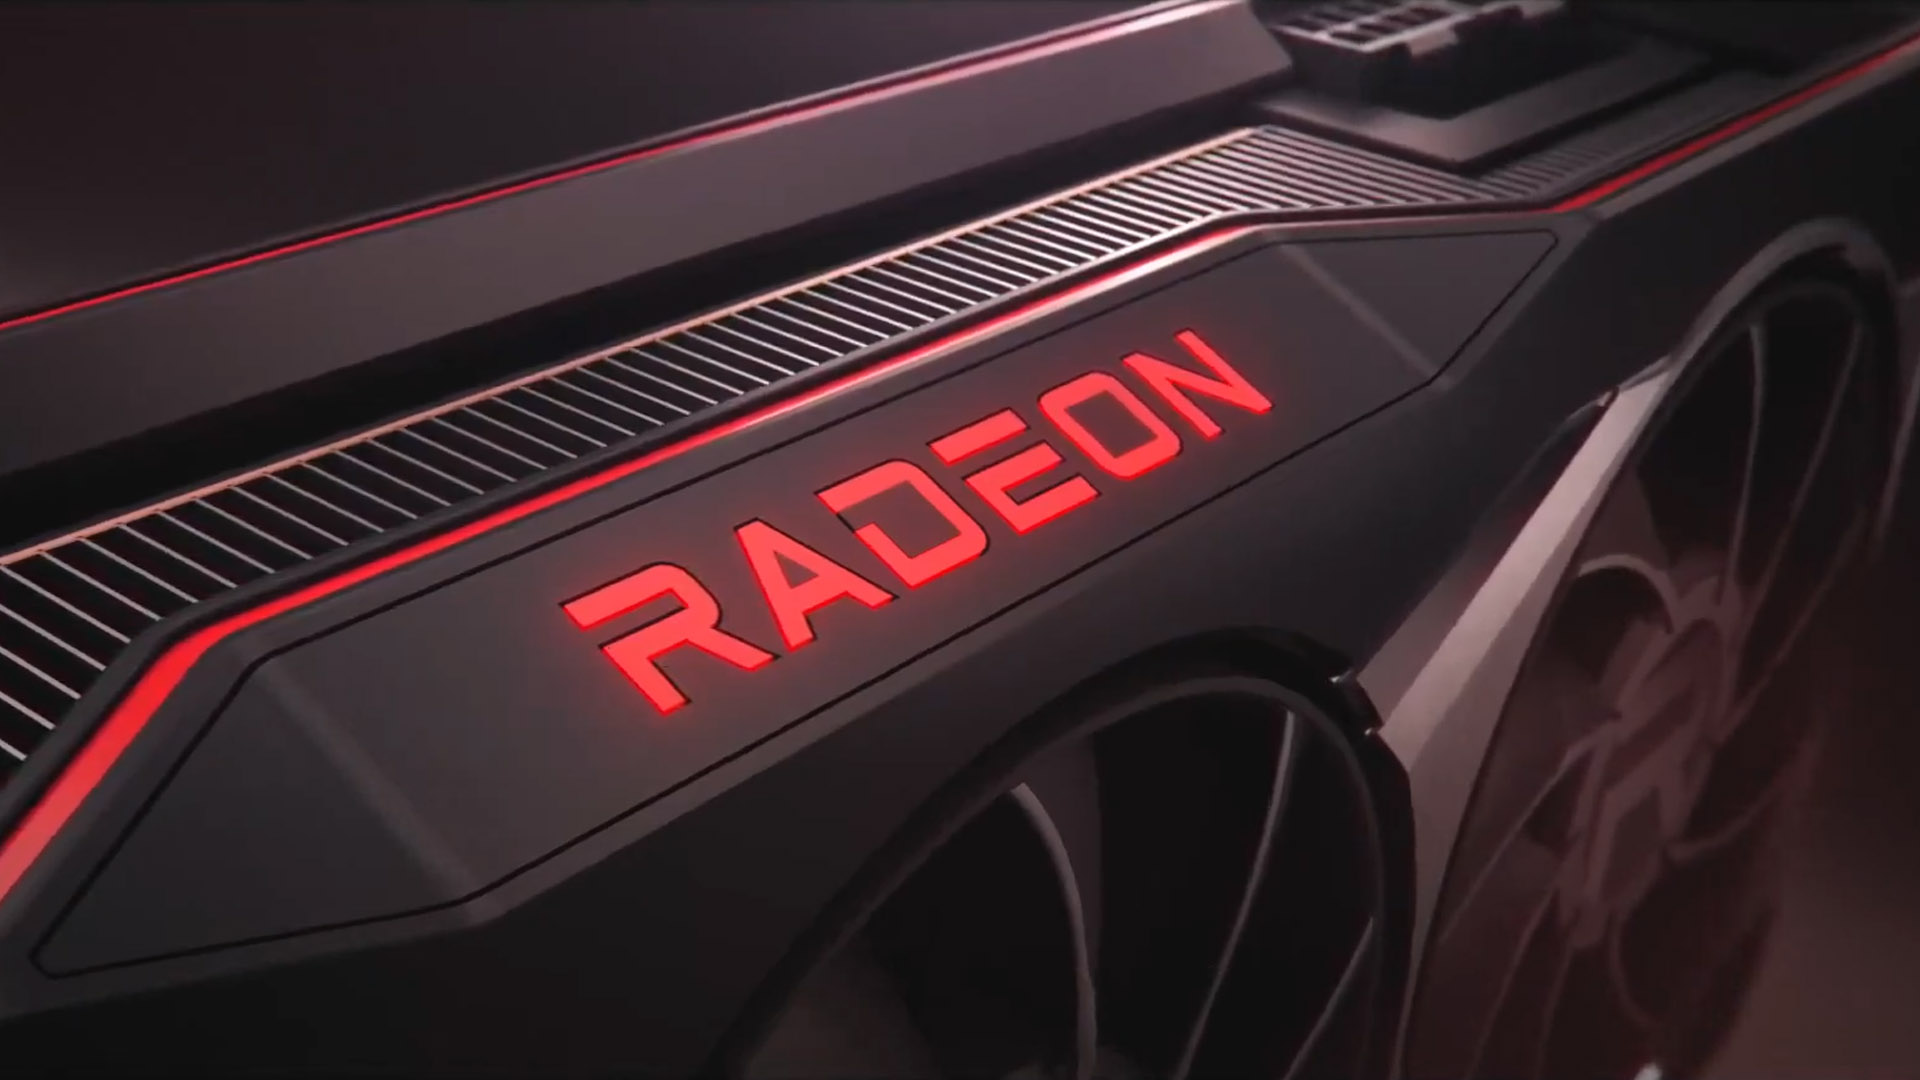 Amd Radeon Rx 6000 meddelande 2